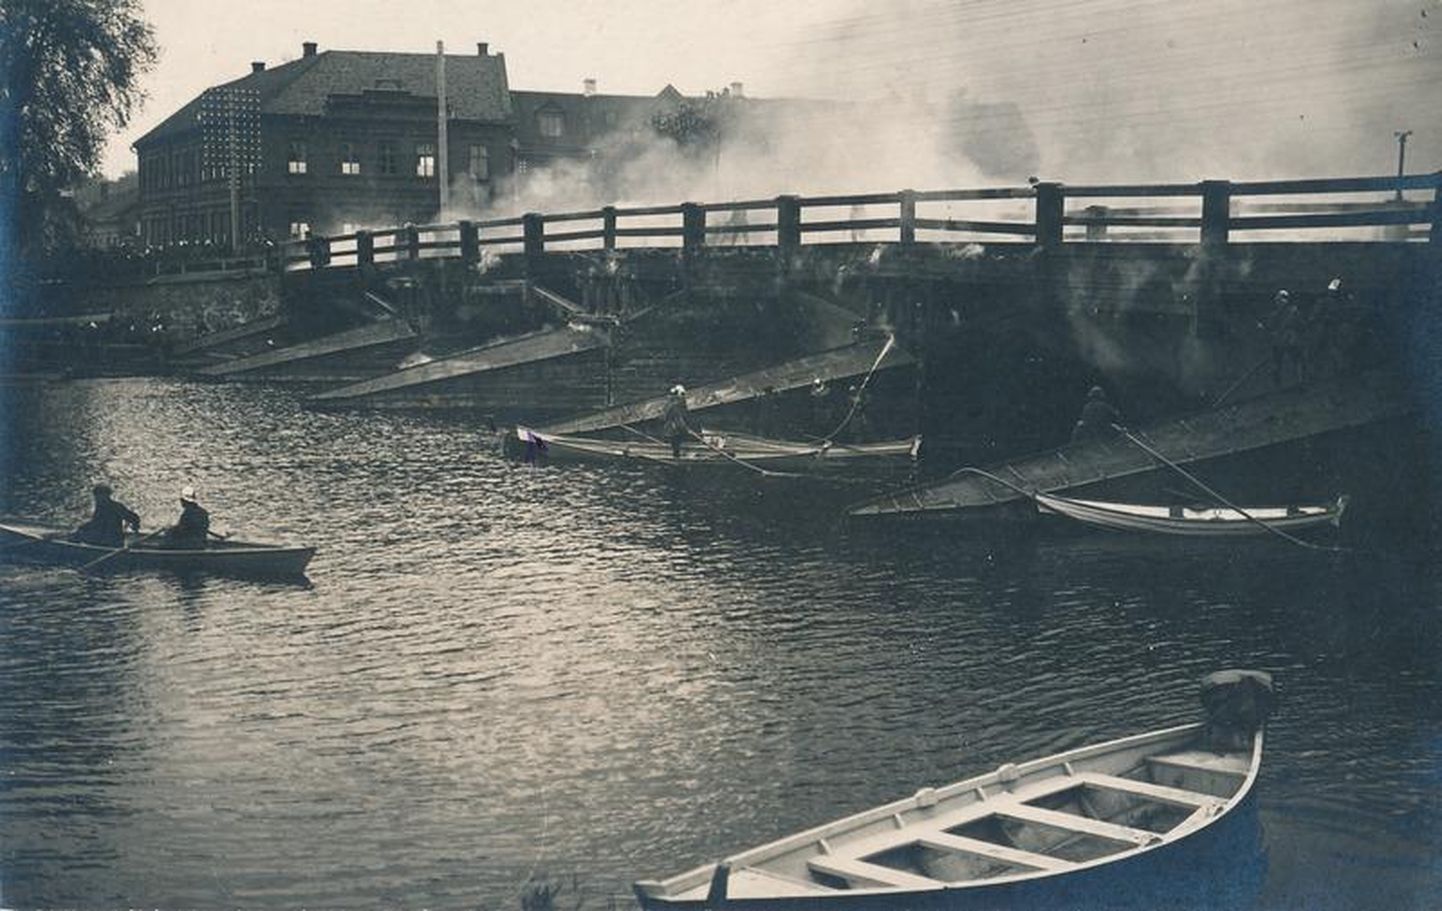 Süttinud silla kustutamine Emajõel 22. juunil 1923. Kiivrites tuletõrjujad on nii paatides kui ka sillal ja selle all.